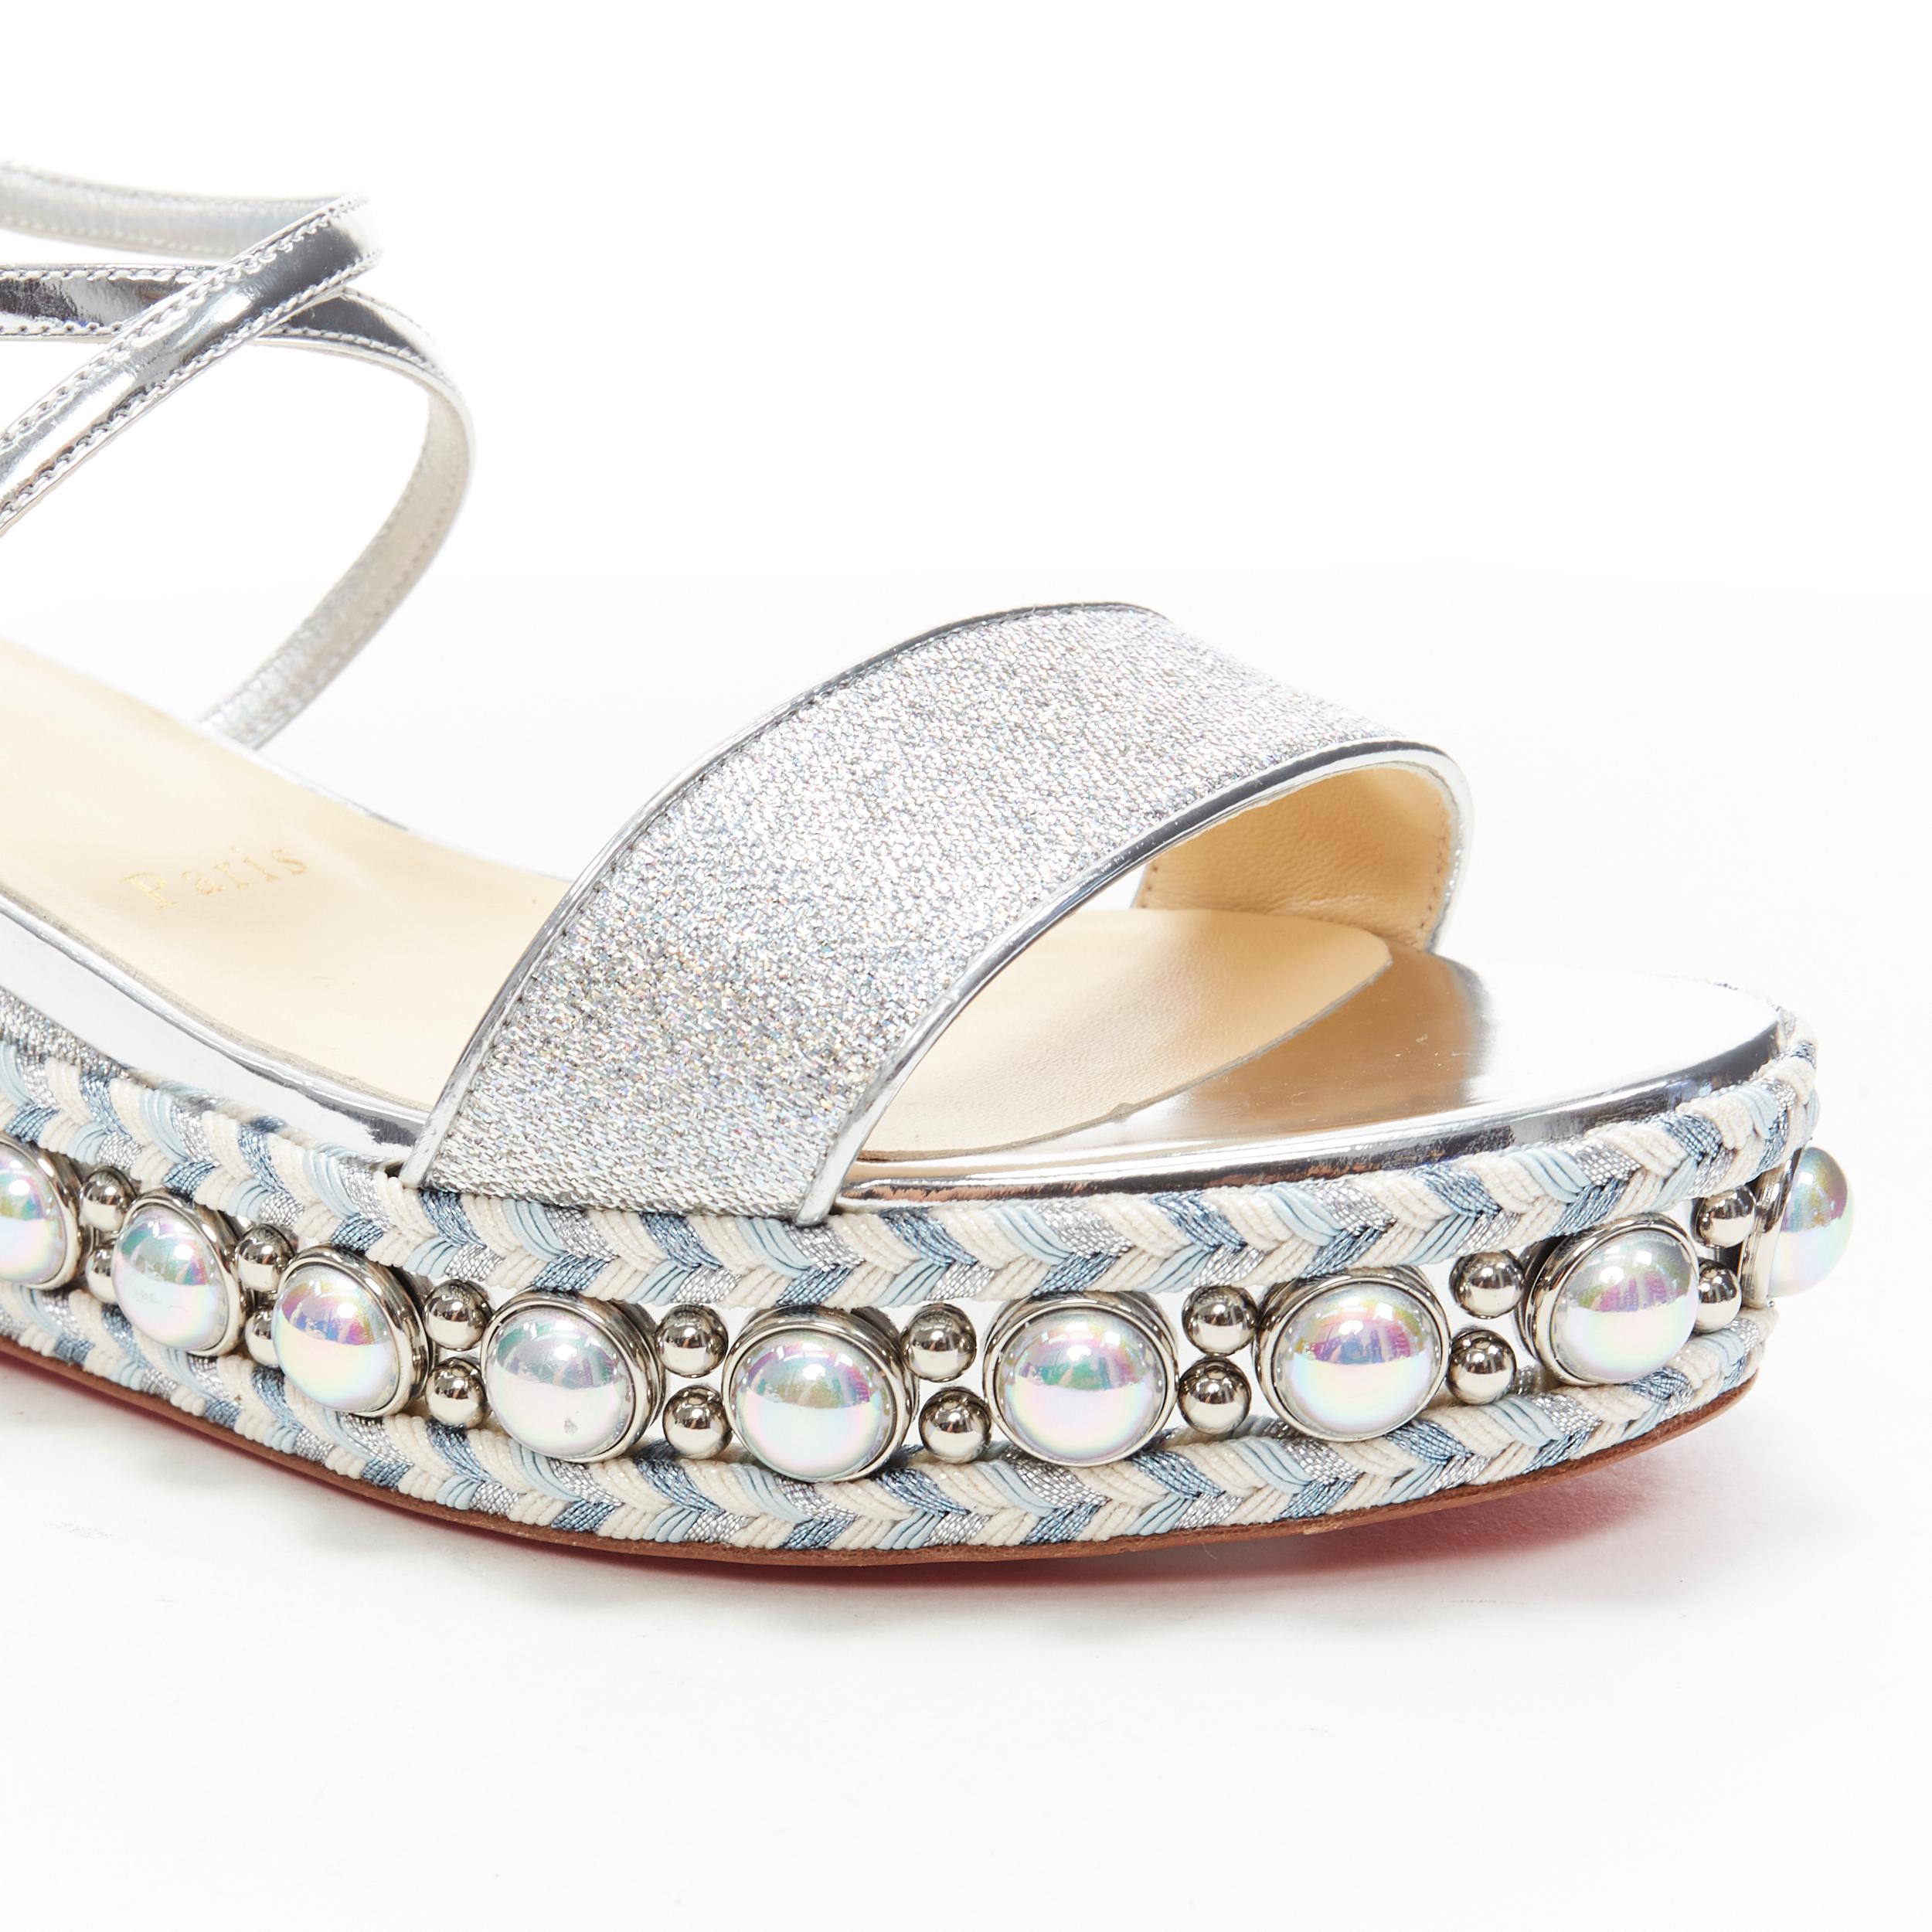 new CHRISTIAN LOUBOUTIN Chocazeppa 60 silver lurex studded platform sandals EU37 2